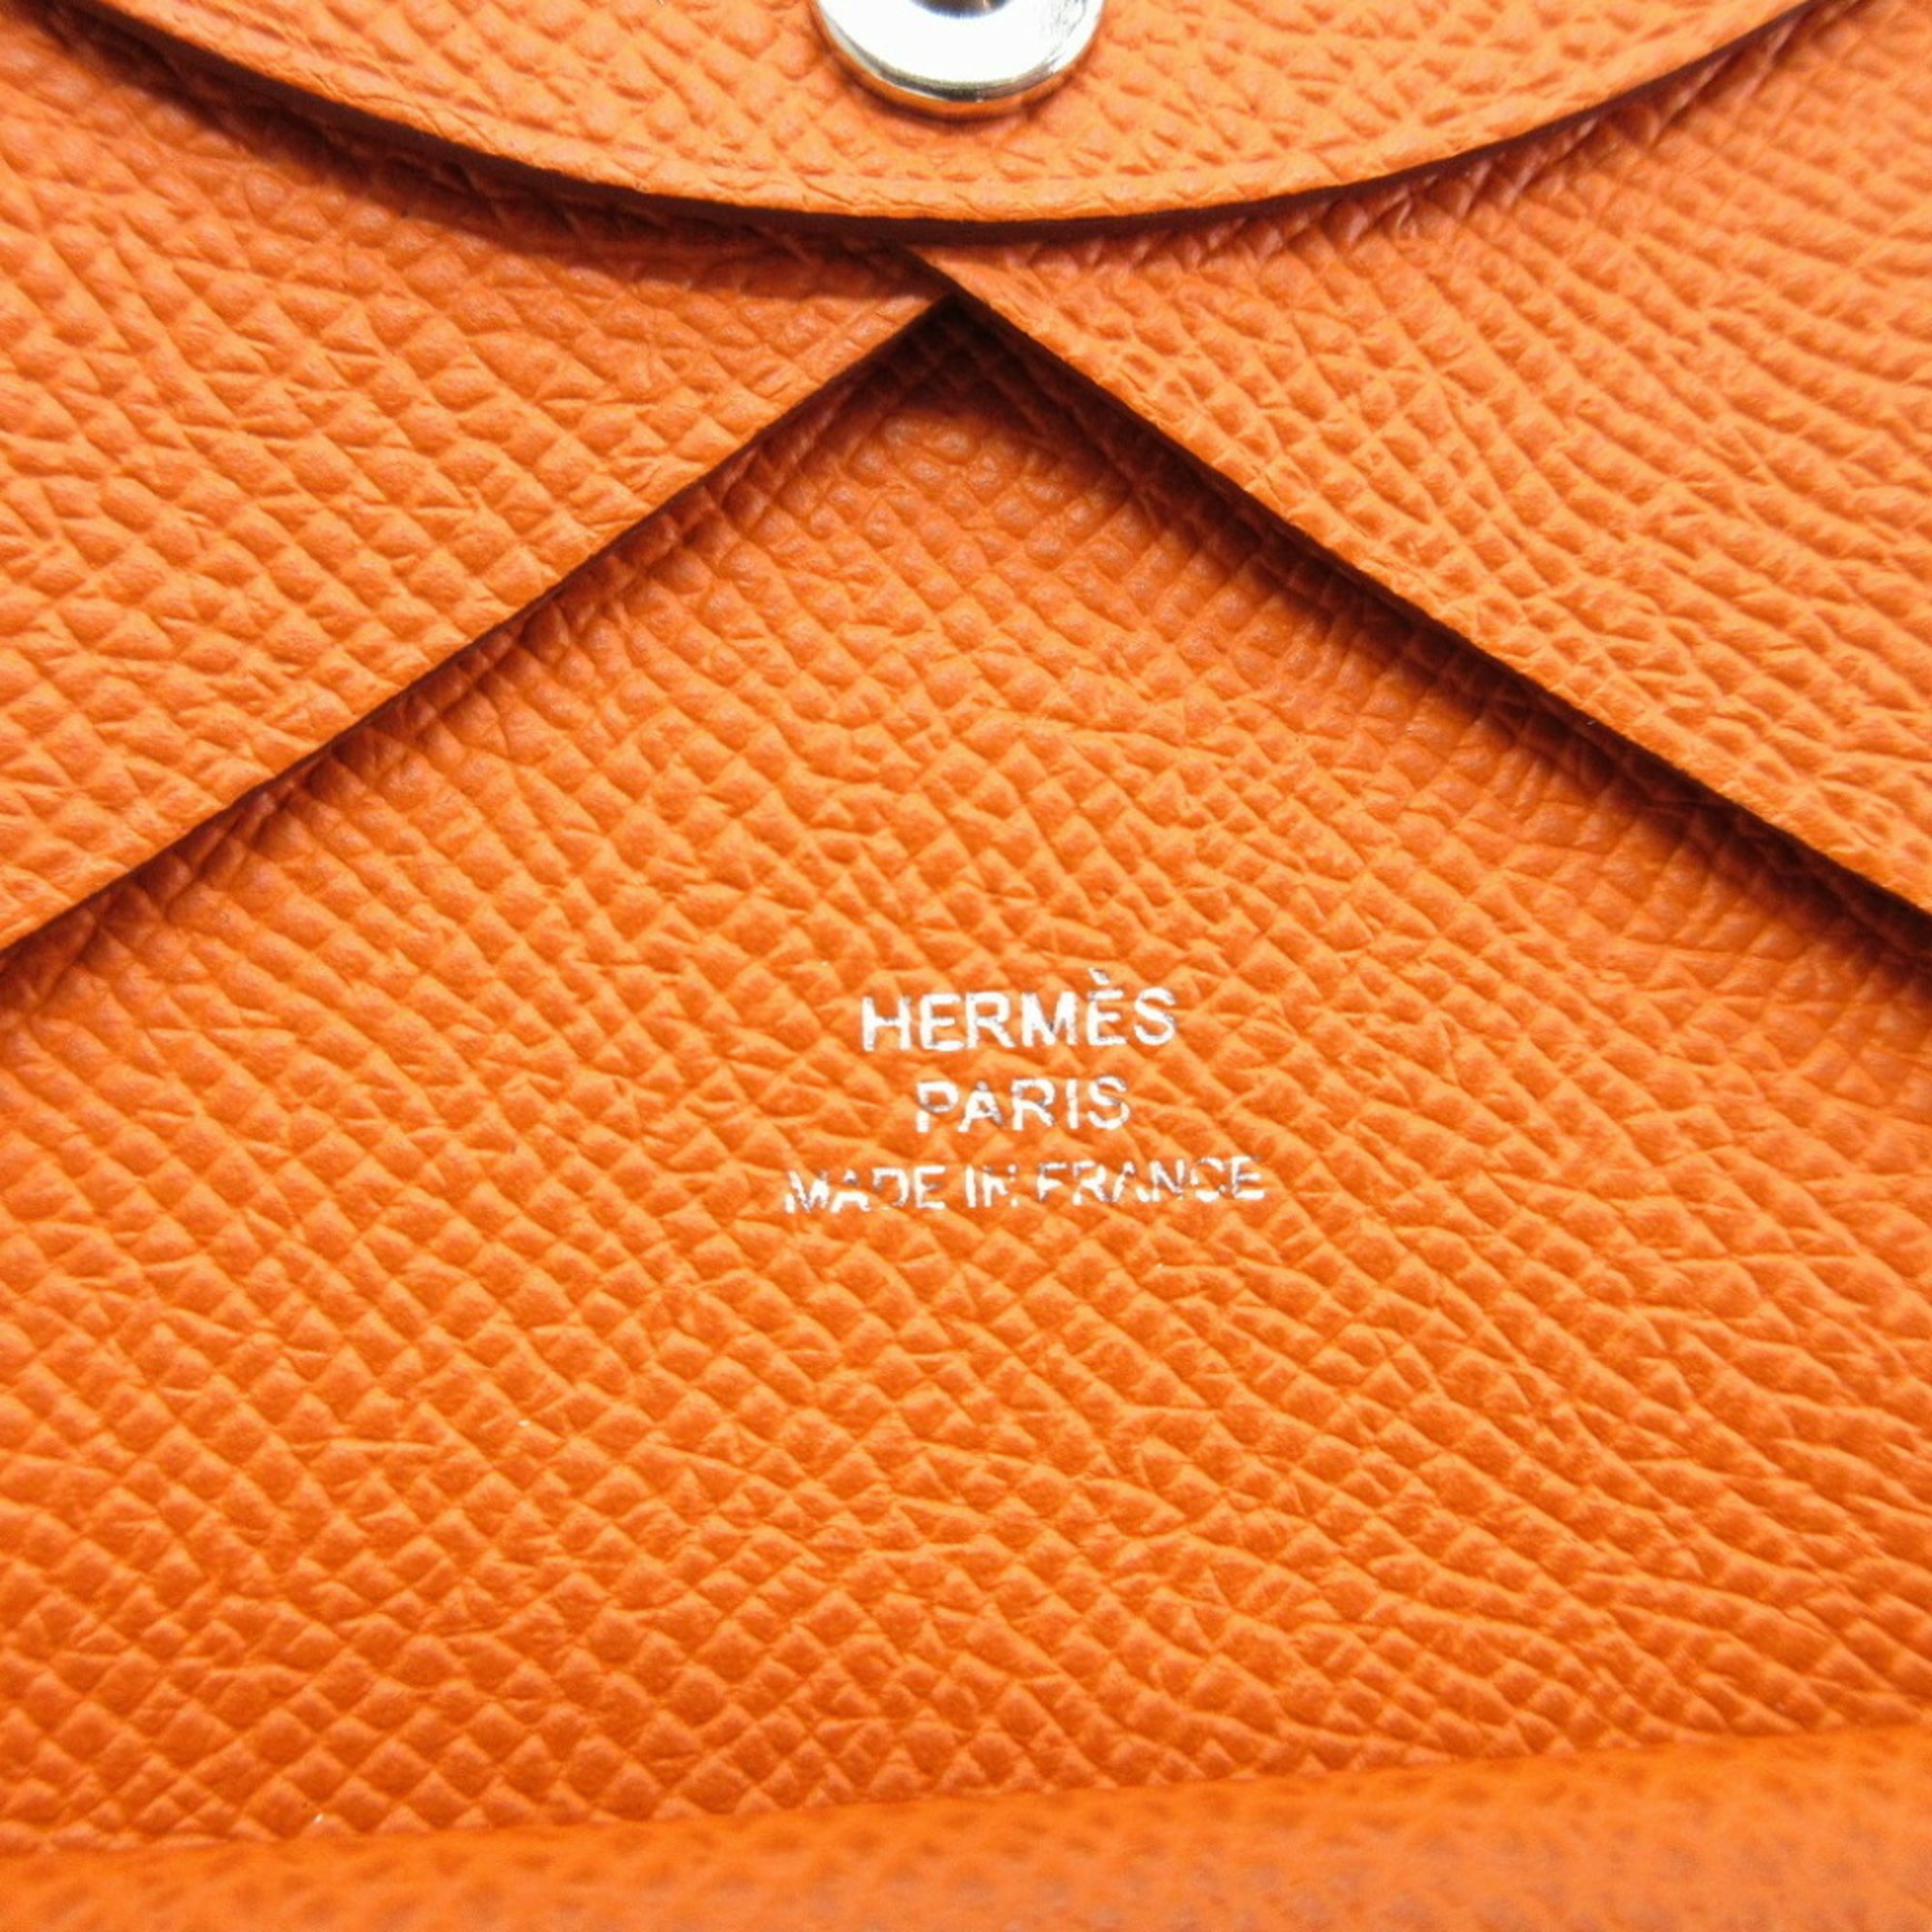 Hermes Calvi Duo U engraved Vaux Epson Orange Card Case 0016HERMES 6B0016ASE5